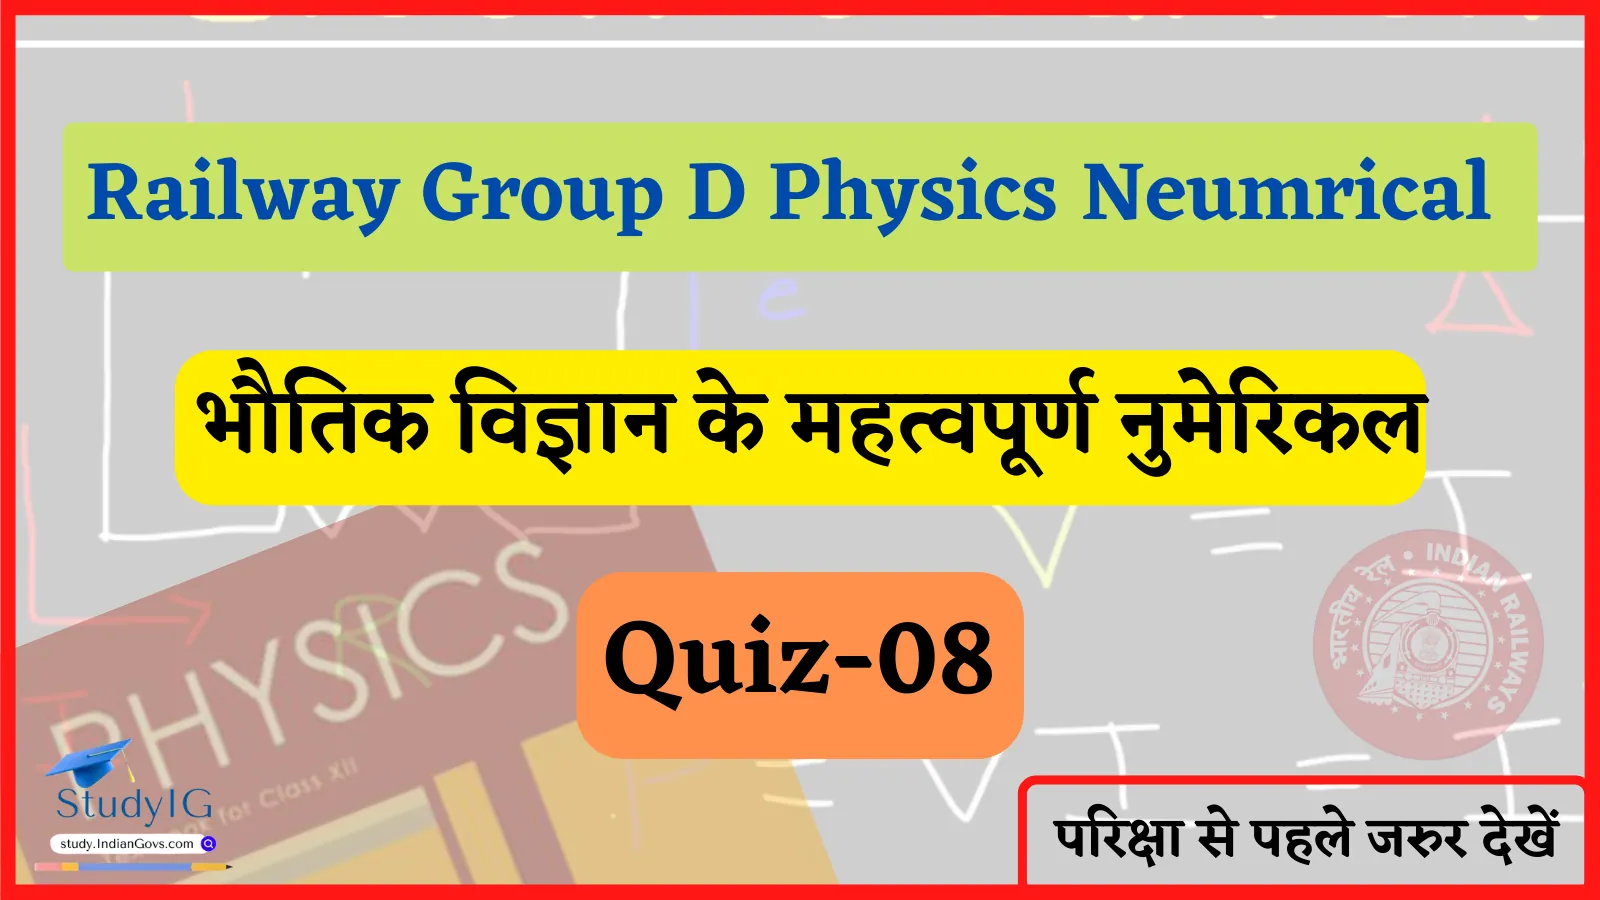 Railway Group D Physics Numerical Quiz- 08